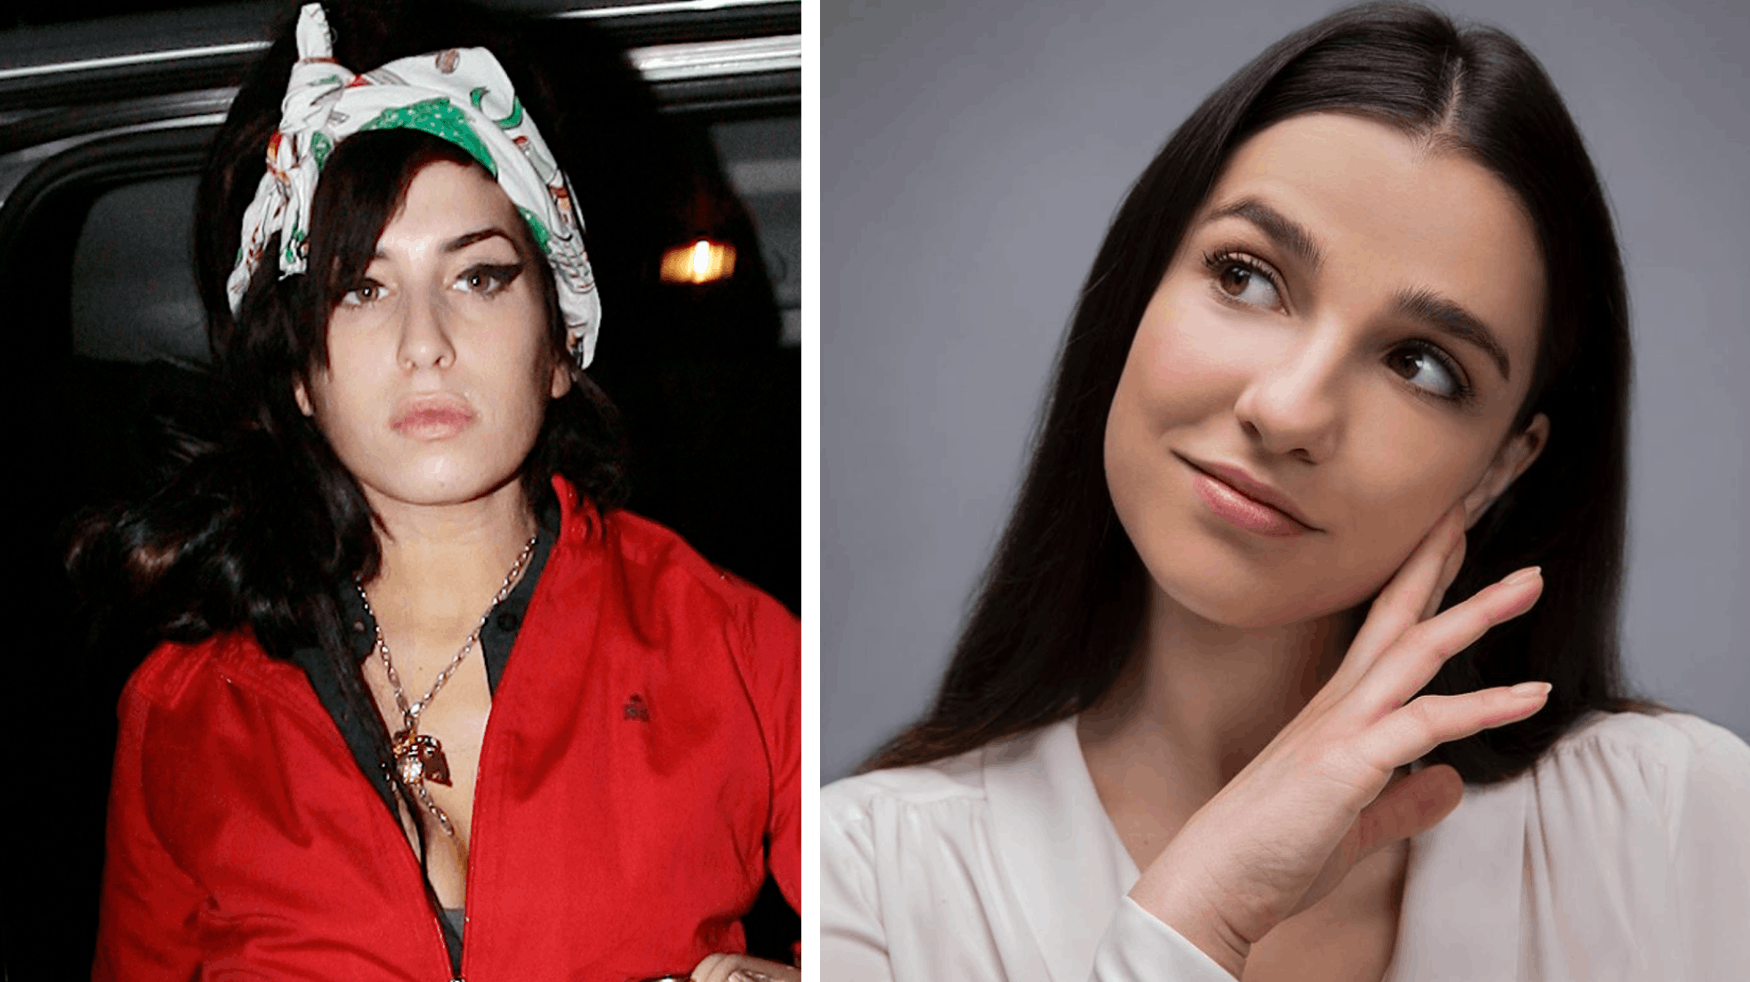 25-årige Marisa Abela skal efter alt at dømme spille Amy Winehouse i biograffilmen om sangerindens liv og karriere